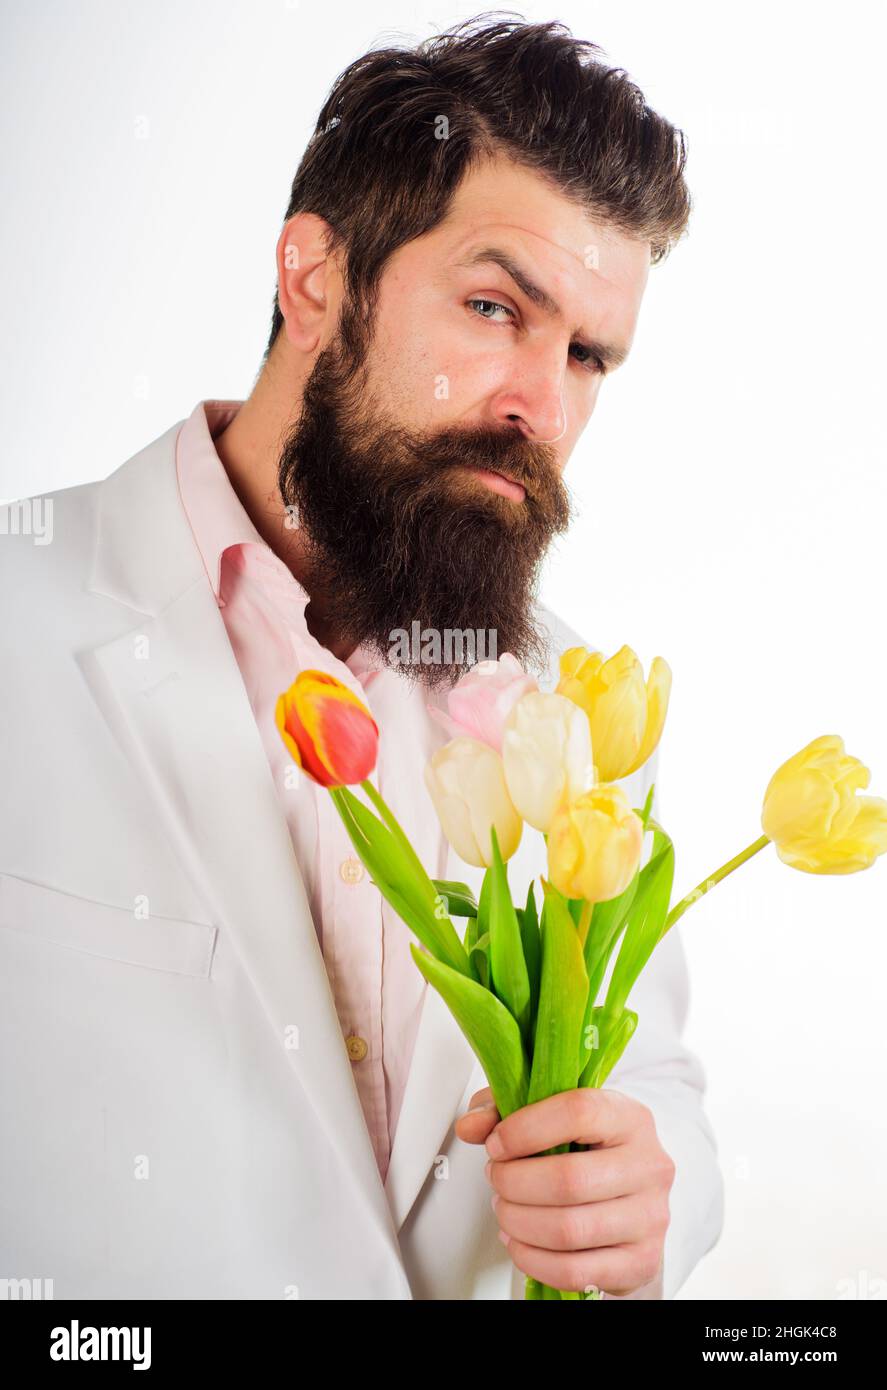 Geschäftsmann mit Tulpenstrauß. Bärtiger Mann mit Blumen. Valentinstag, Frauentag, Geburtstag. Stockfoto